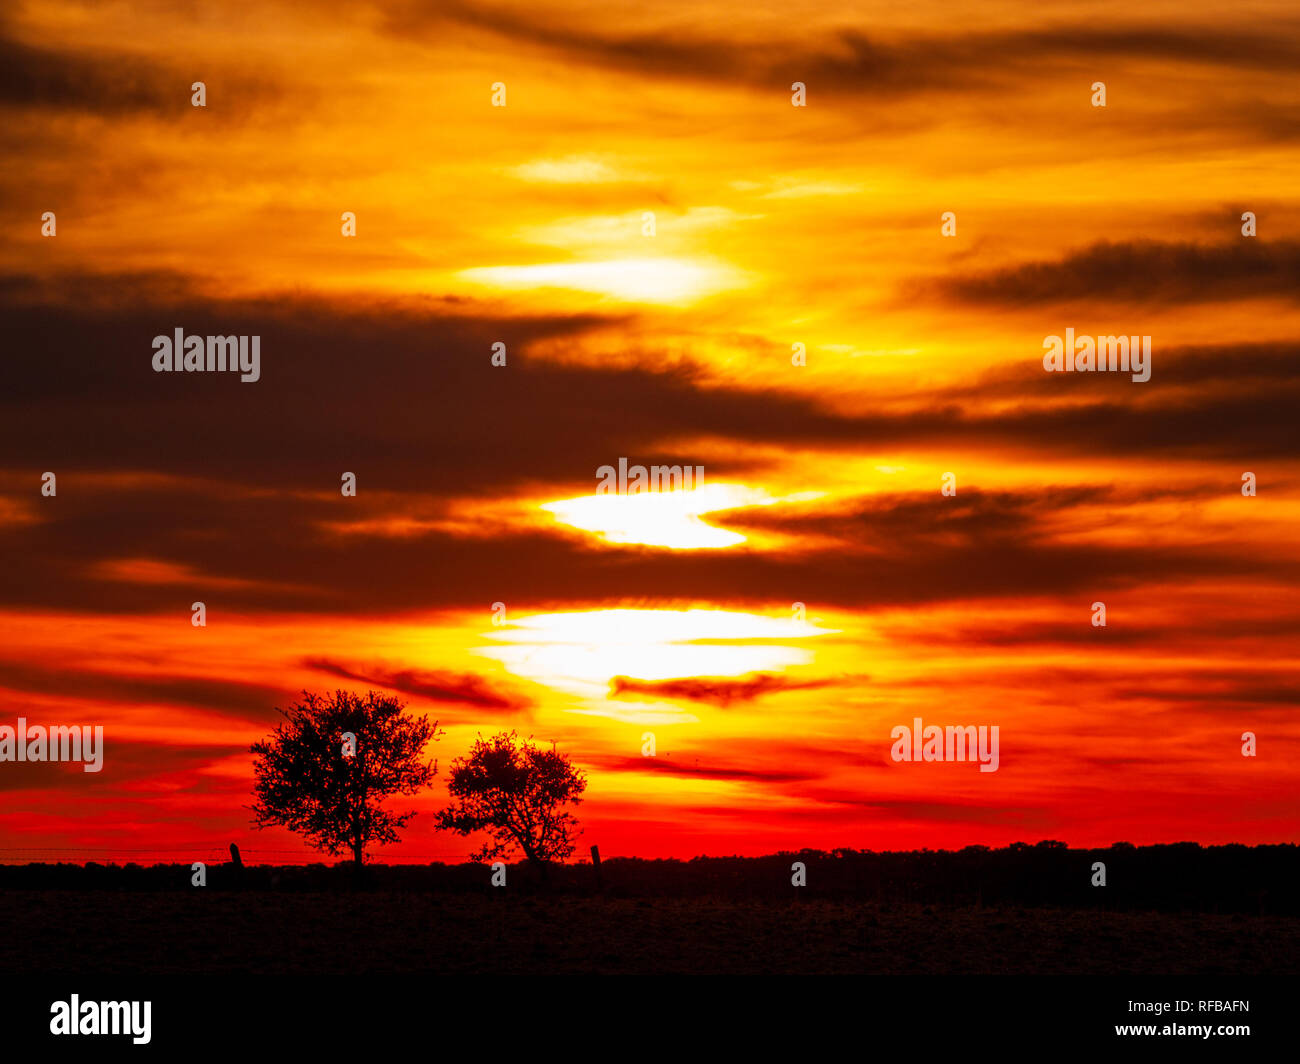 Romantico cielo arancione al tramonto in un giorno nuvoloso in la dehesa e silhouette di albero Foto Stock